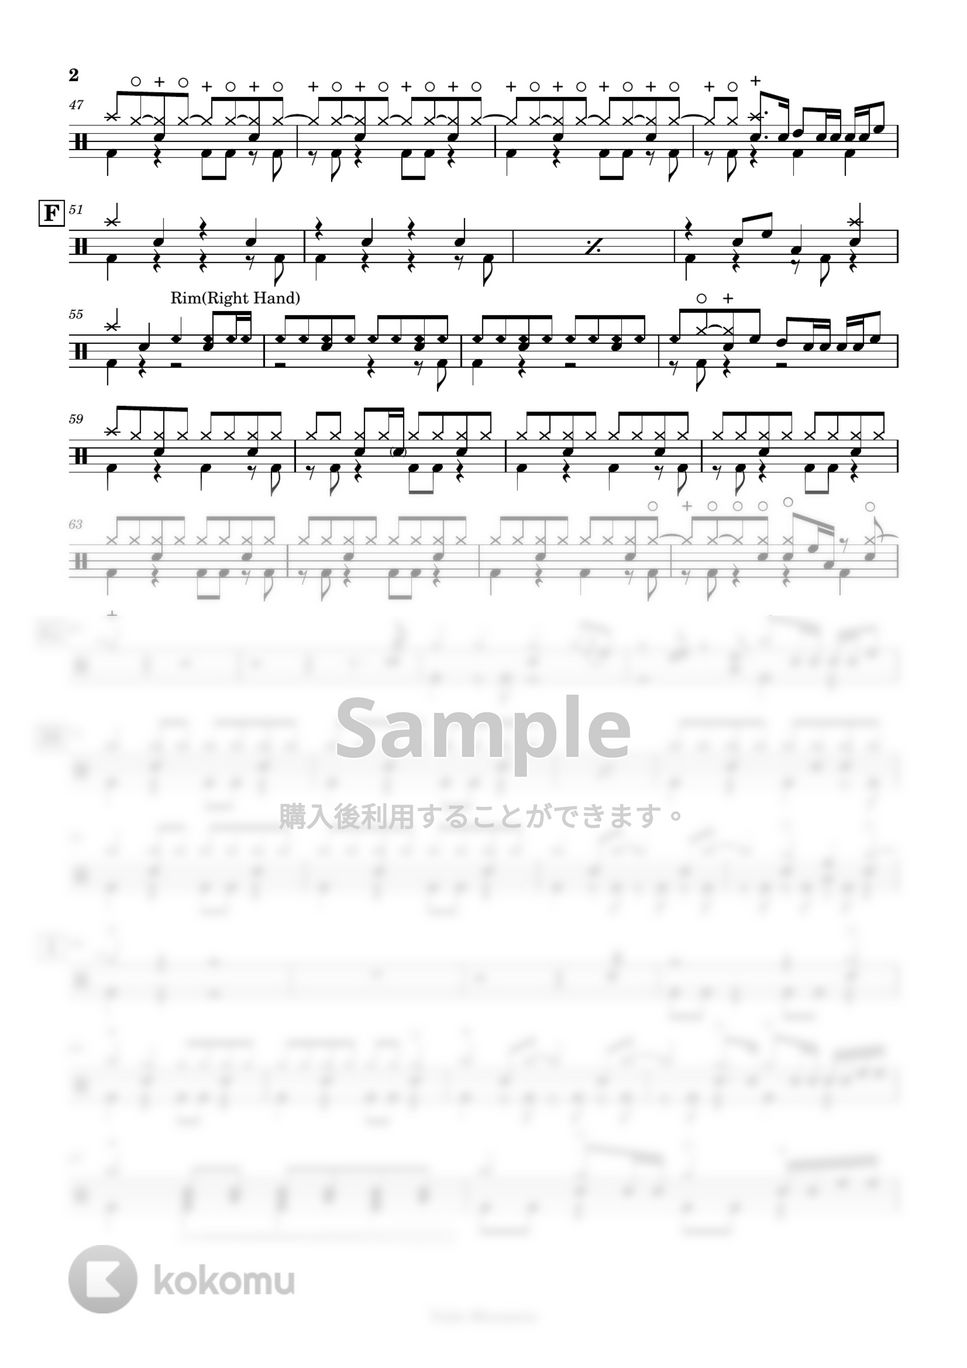 ヨルシカ - 【ドラム譜】ただ君に晴れ【完コピ】 by Taiki Mizumoto